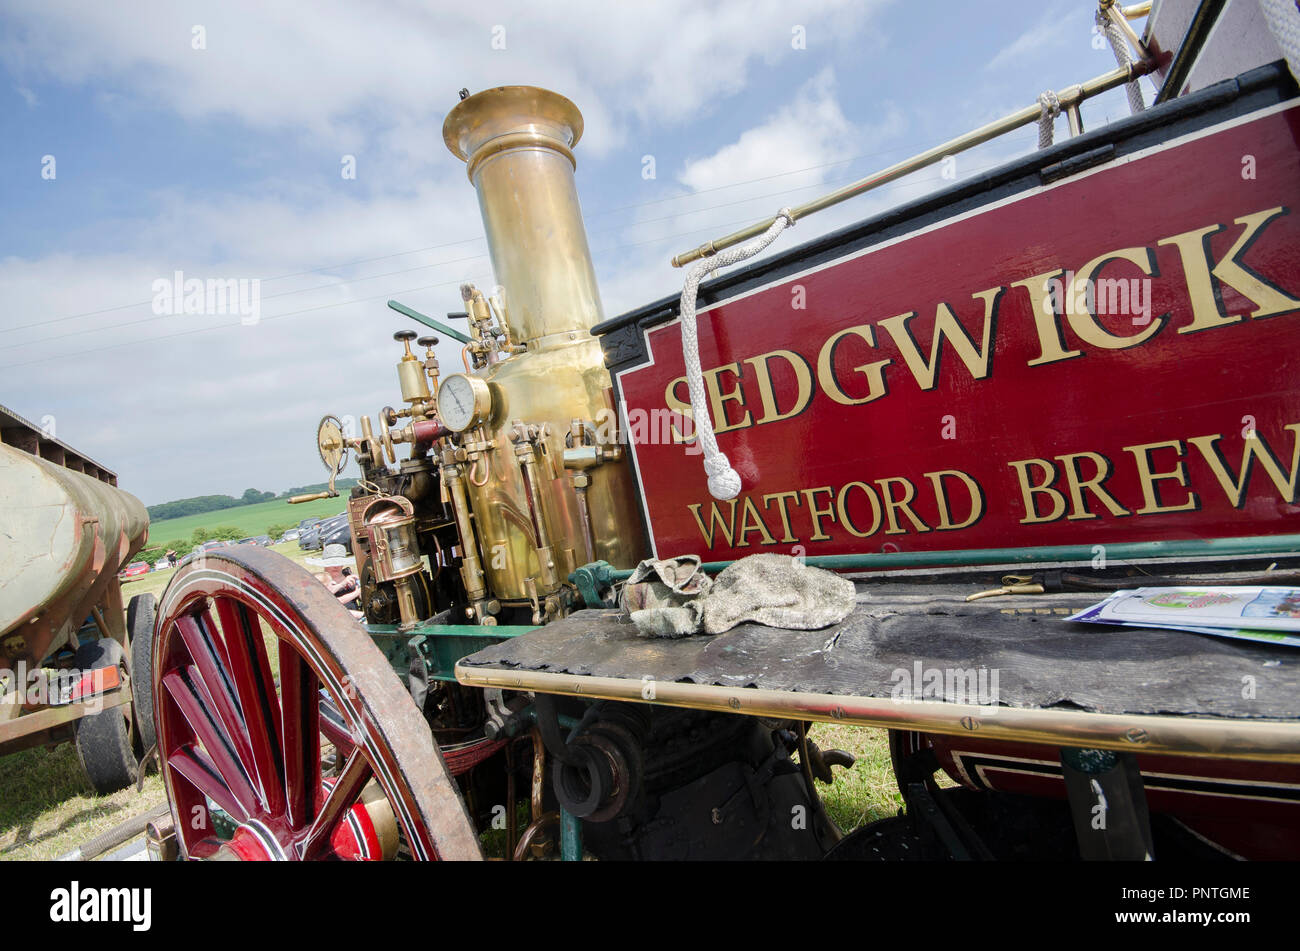 Dampf Fayre Ereignis in Hertfordshire, Anzeige von Traktoren und Dampfmaschinen, die jährlich und offen für Public Viewing. Stockfoto